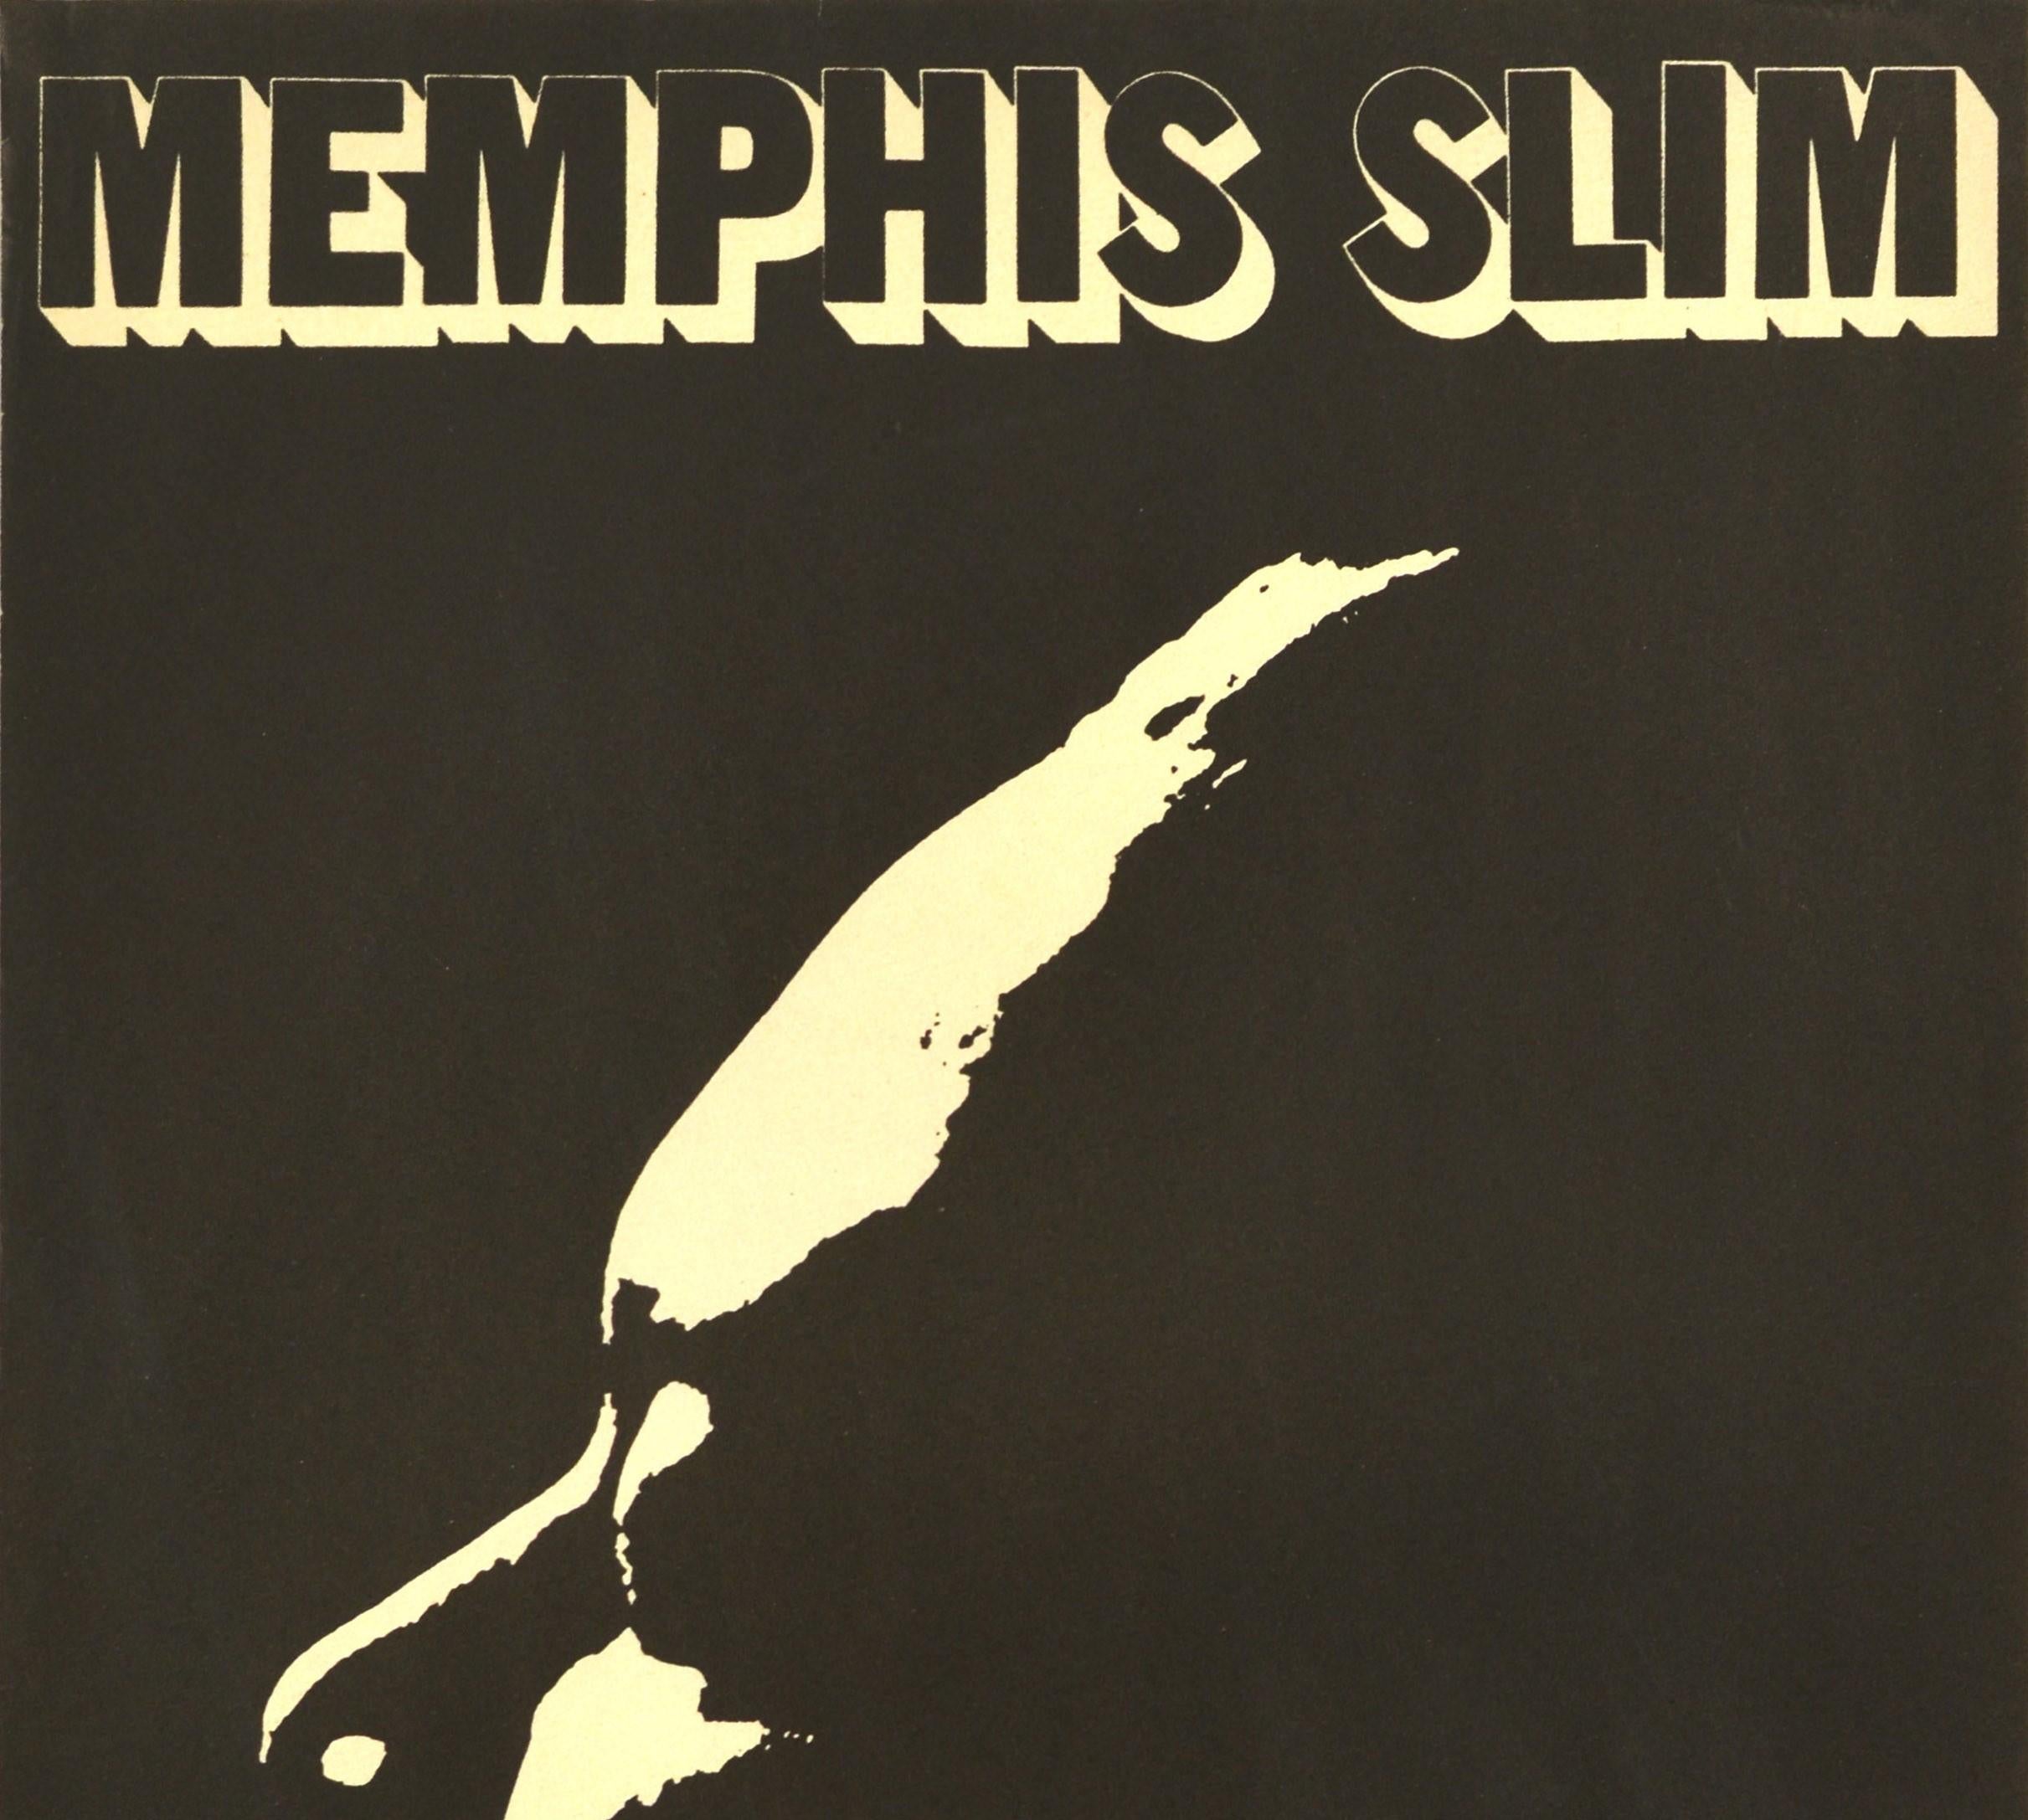 Originales Vintage-Musikplakat für den amerikanischen Blues-Pianisten, Sänger und Songwriter Memphis Slim (John Len Chatman; 1915-1988) mit einer Silhouette des Pianisten des französischen Fotografen Jean-Pierre Leloir (1931-2010), der für seine